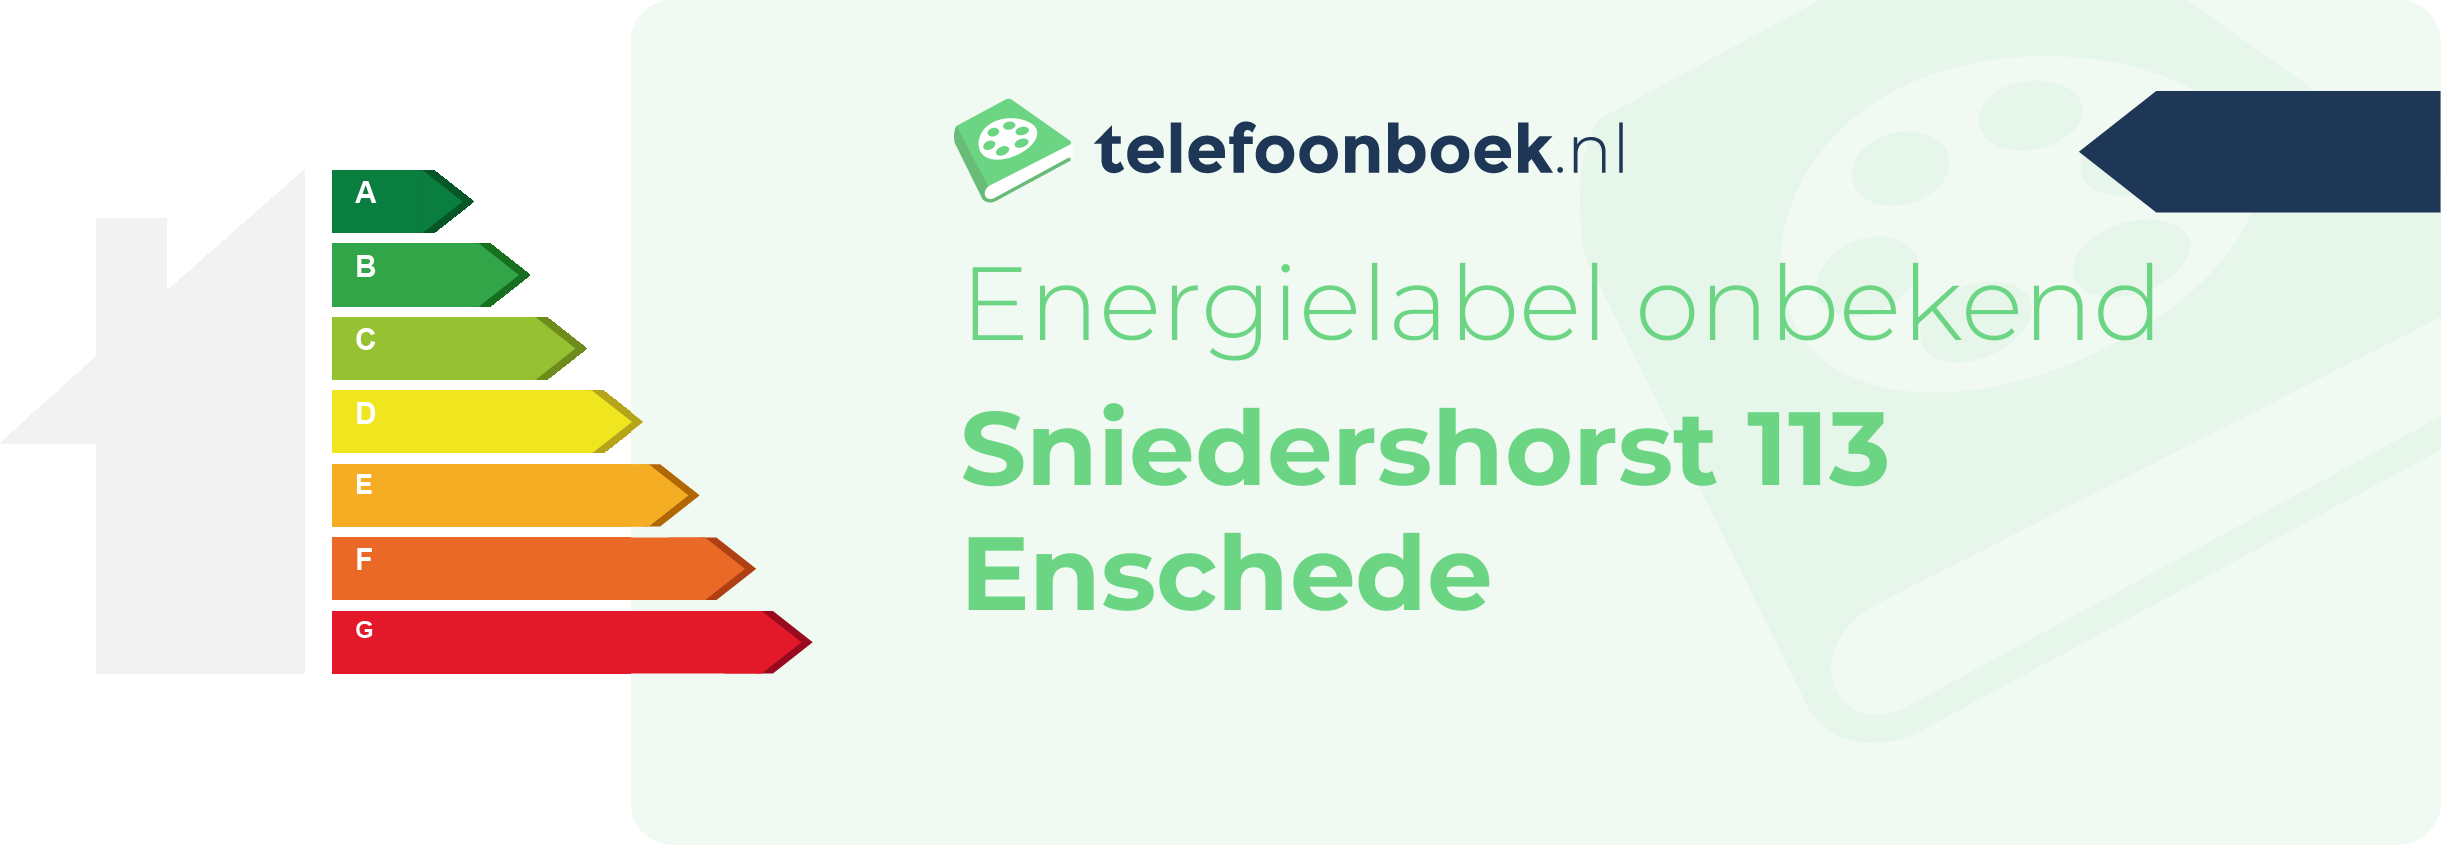 Energielabel Sniedershorst 113 Enschede